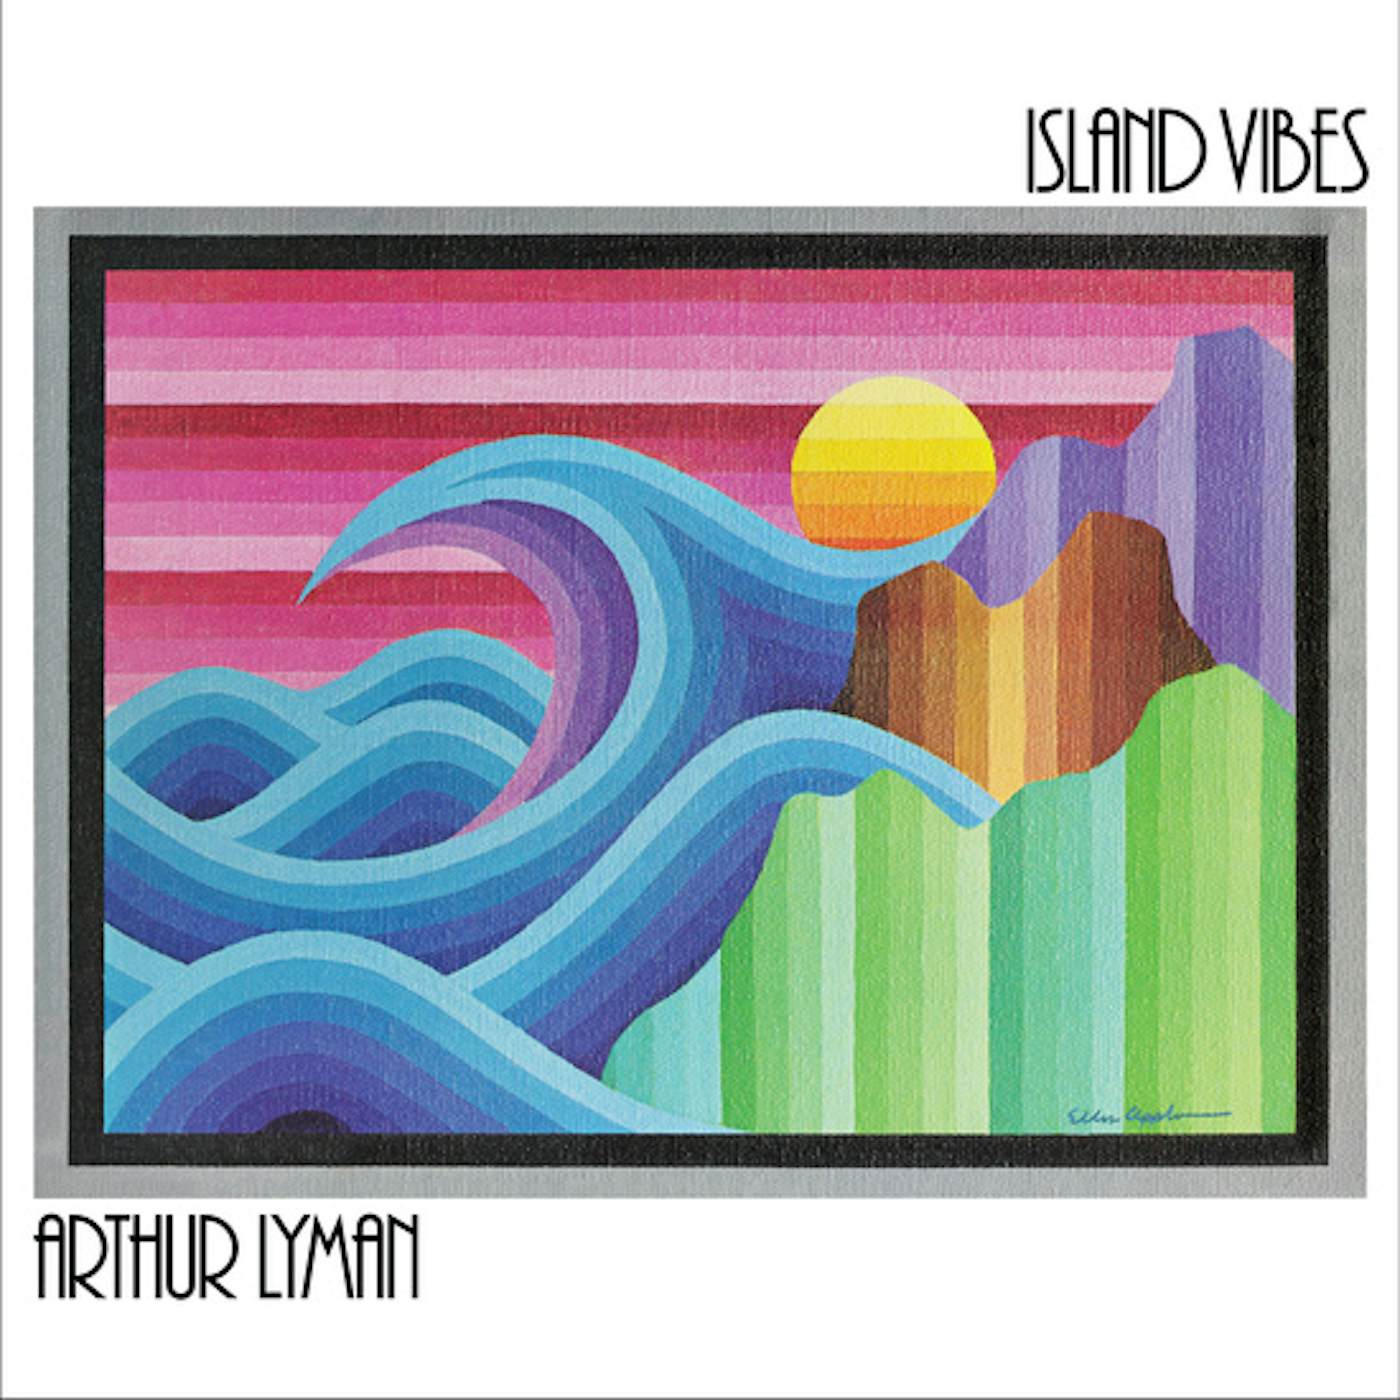 Arthur Lyman ISLAND VIBES (CLEAR VINYL) Vinyl Record